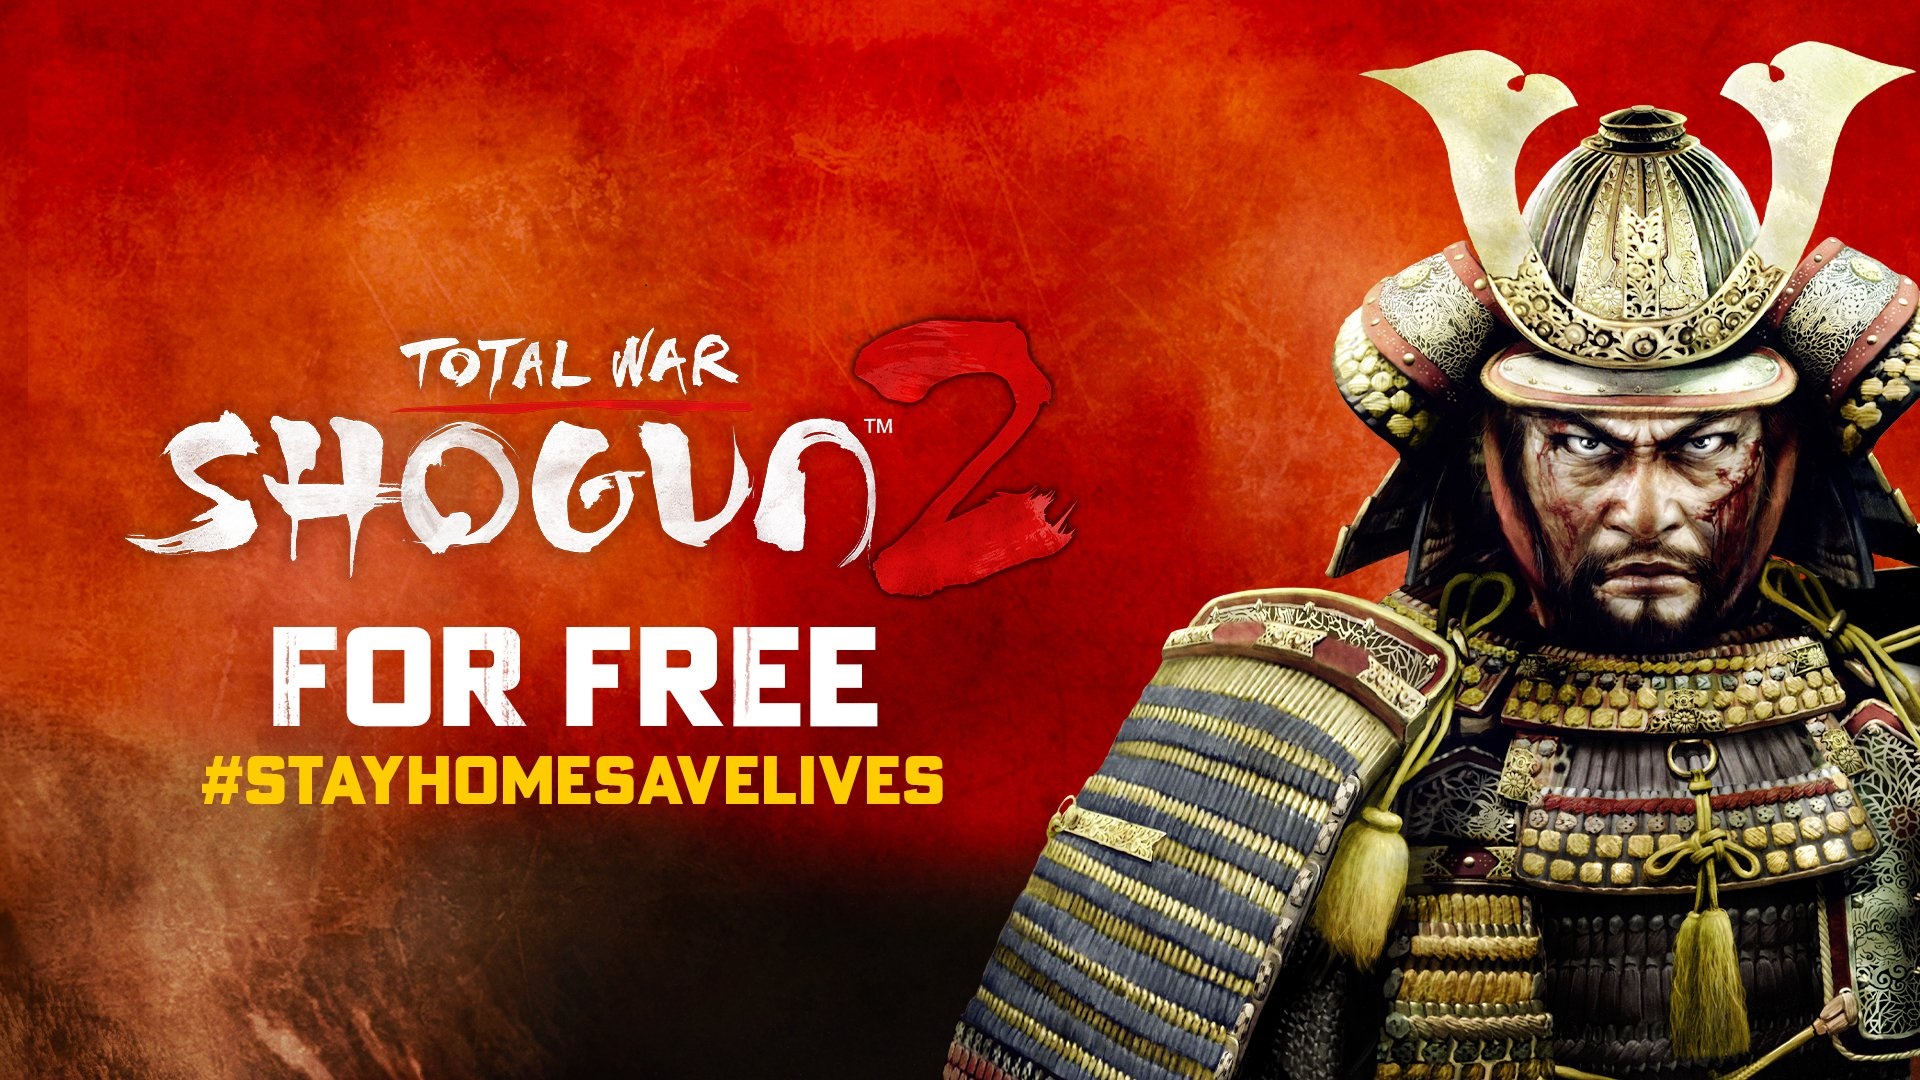 بازی Total War: SHOGUN 2 از 27 آوریل تا 4 ماه مه به صورت رایگان در دسترس کاربران استیم قرار میگیرد